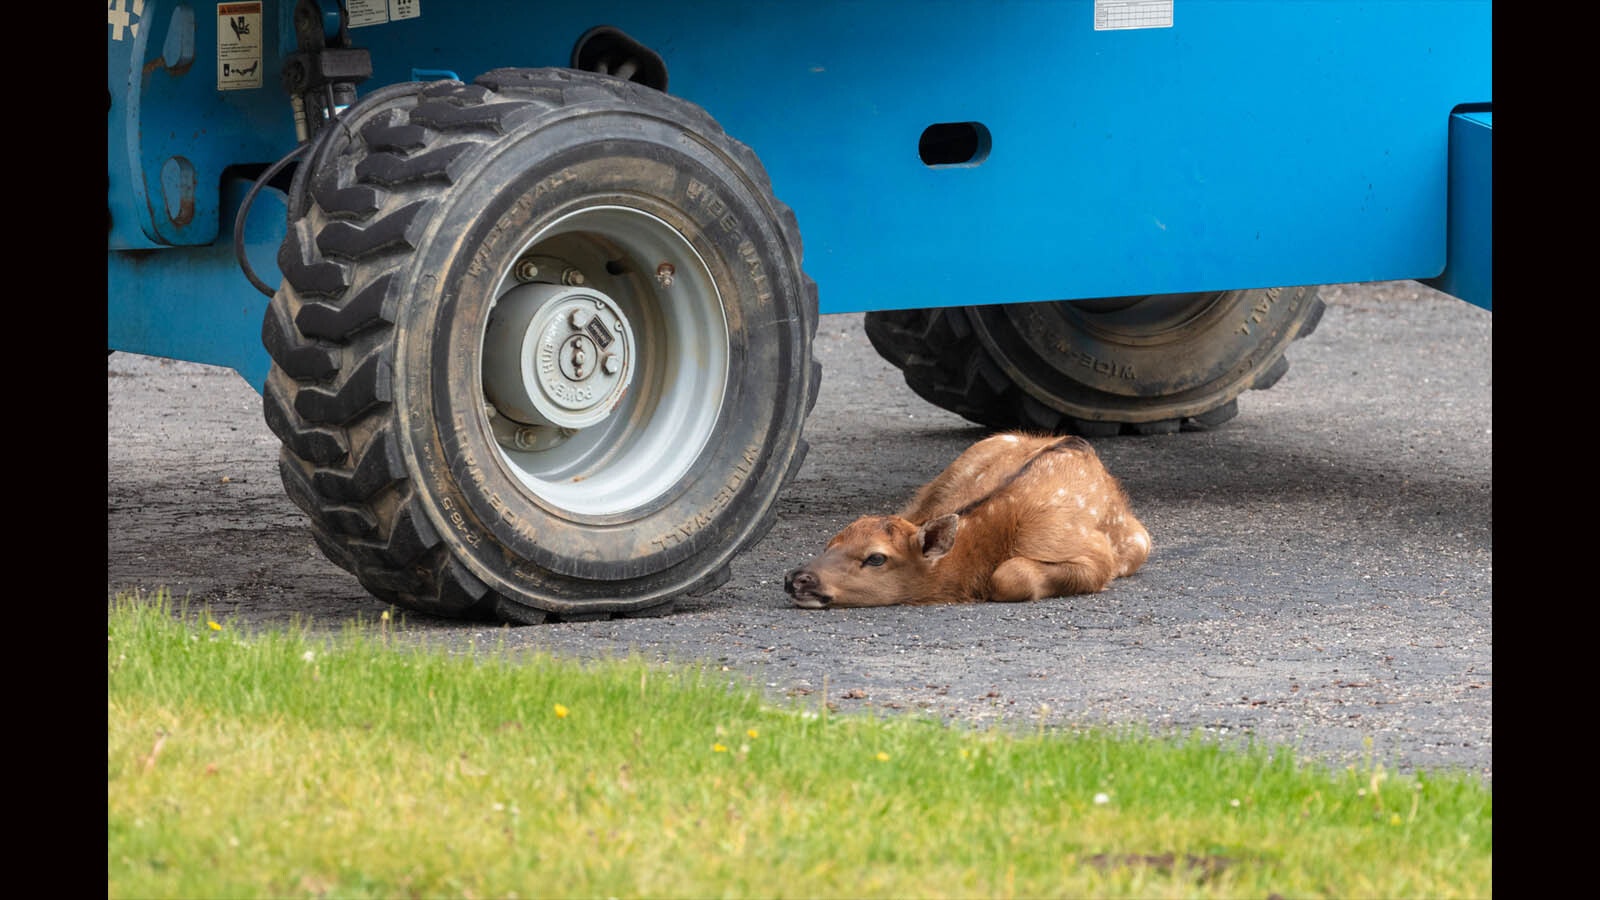 Elk under tire